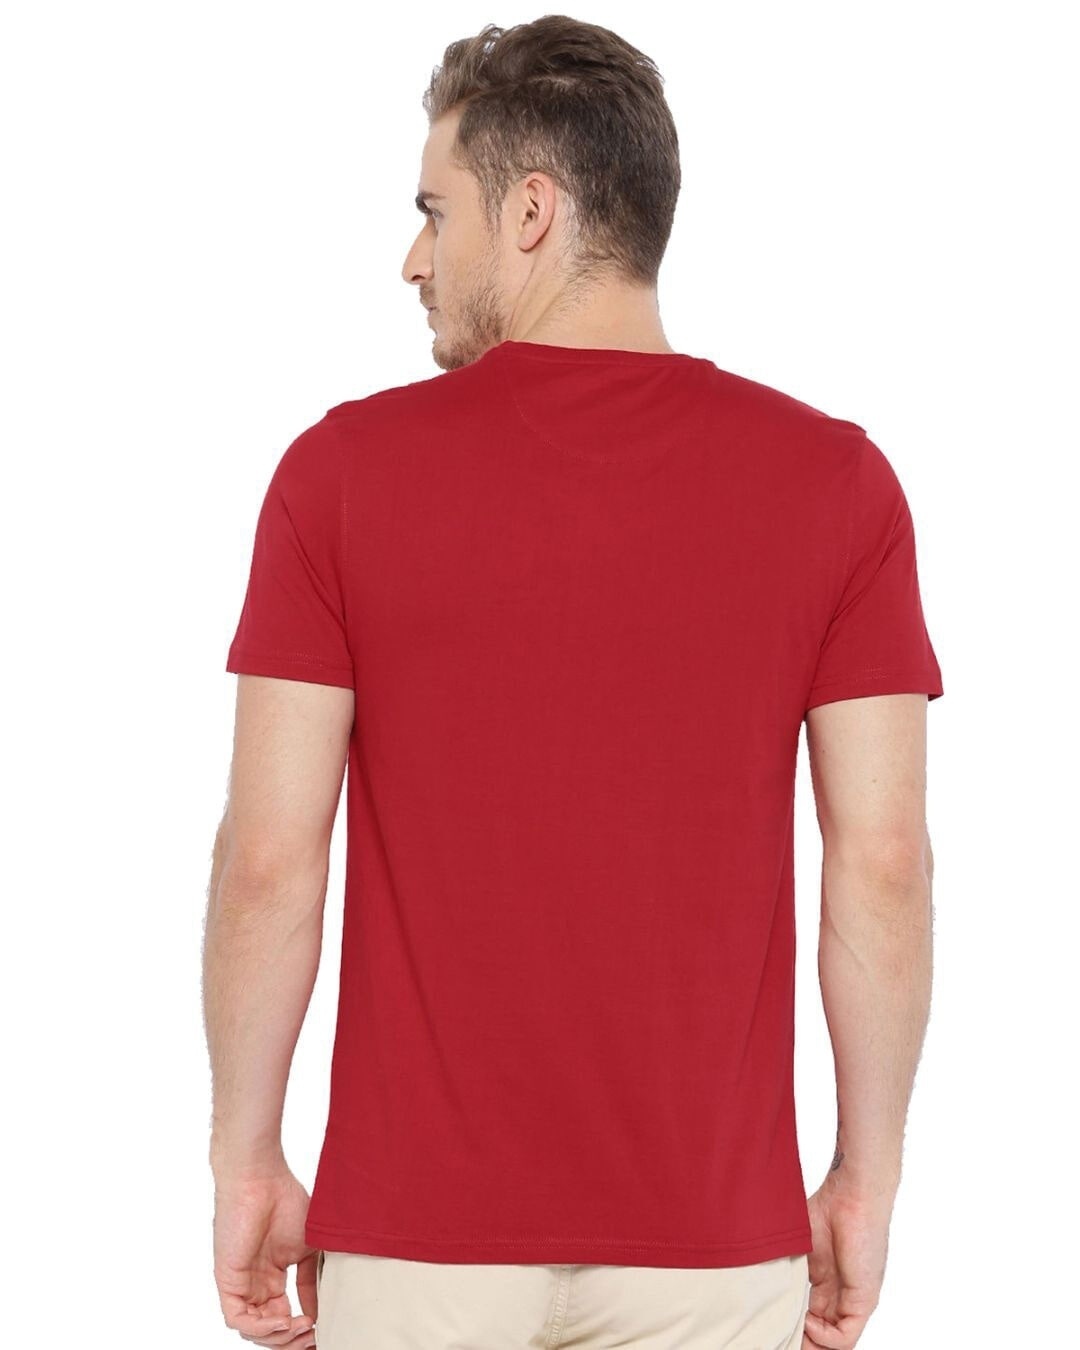 Shop Never Give Up Design Printed T-shirt for Men's-Back